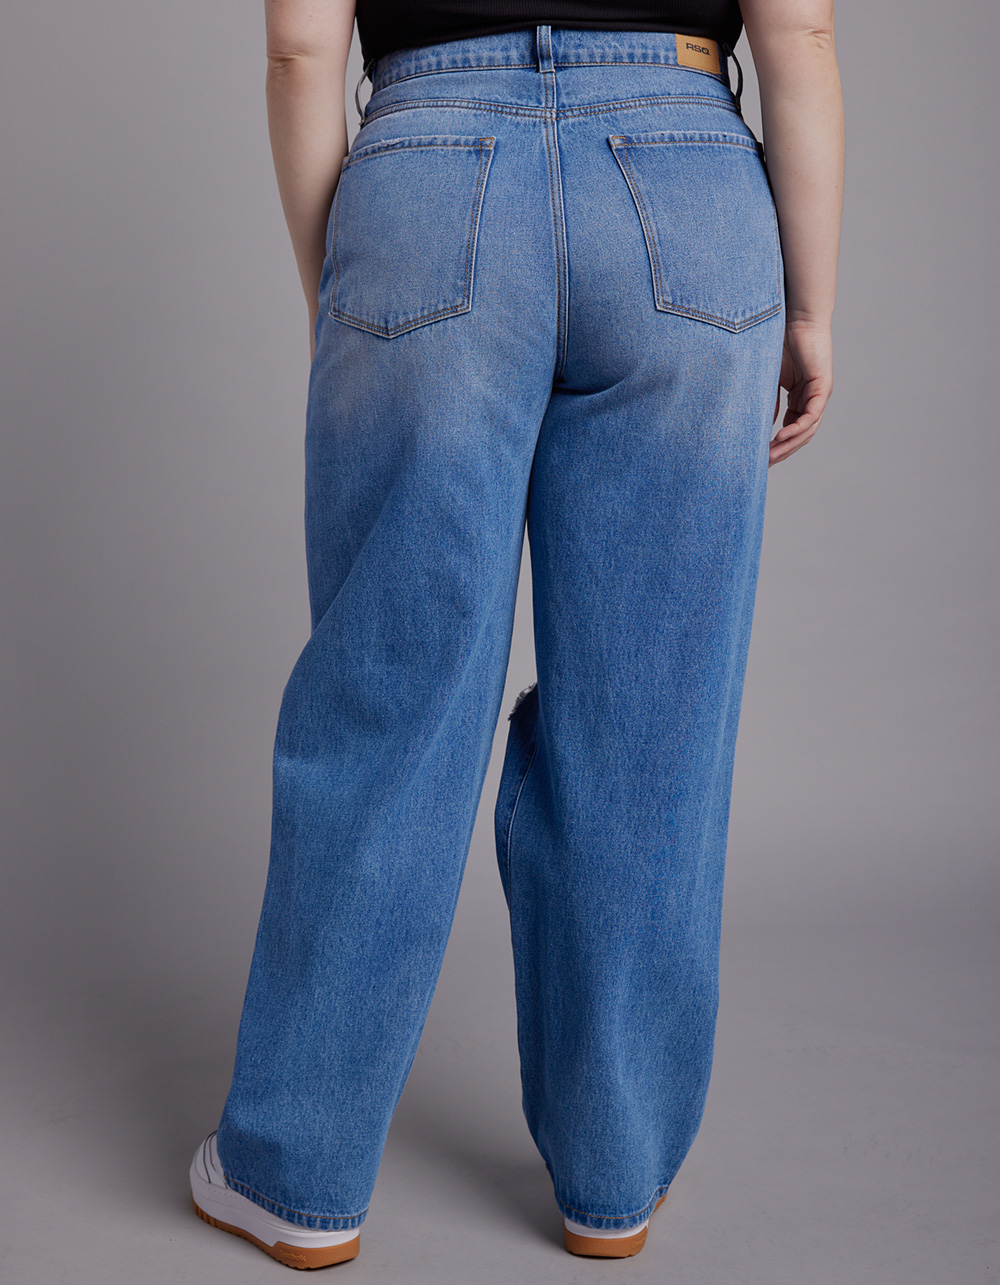 RSQ Womens High Rise Baggy Jeans - MEDIUM WASH